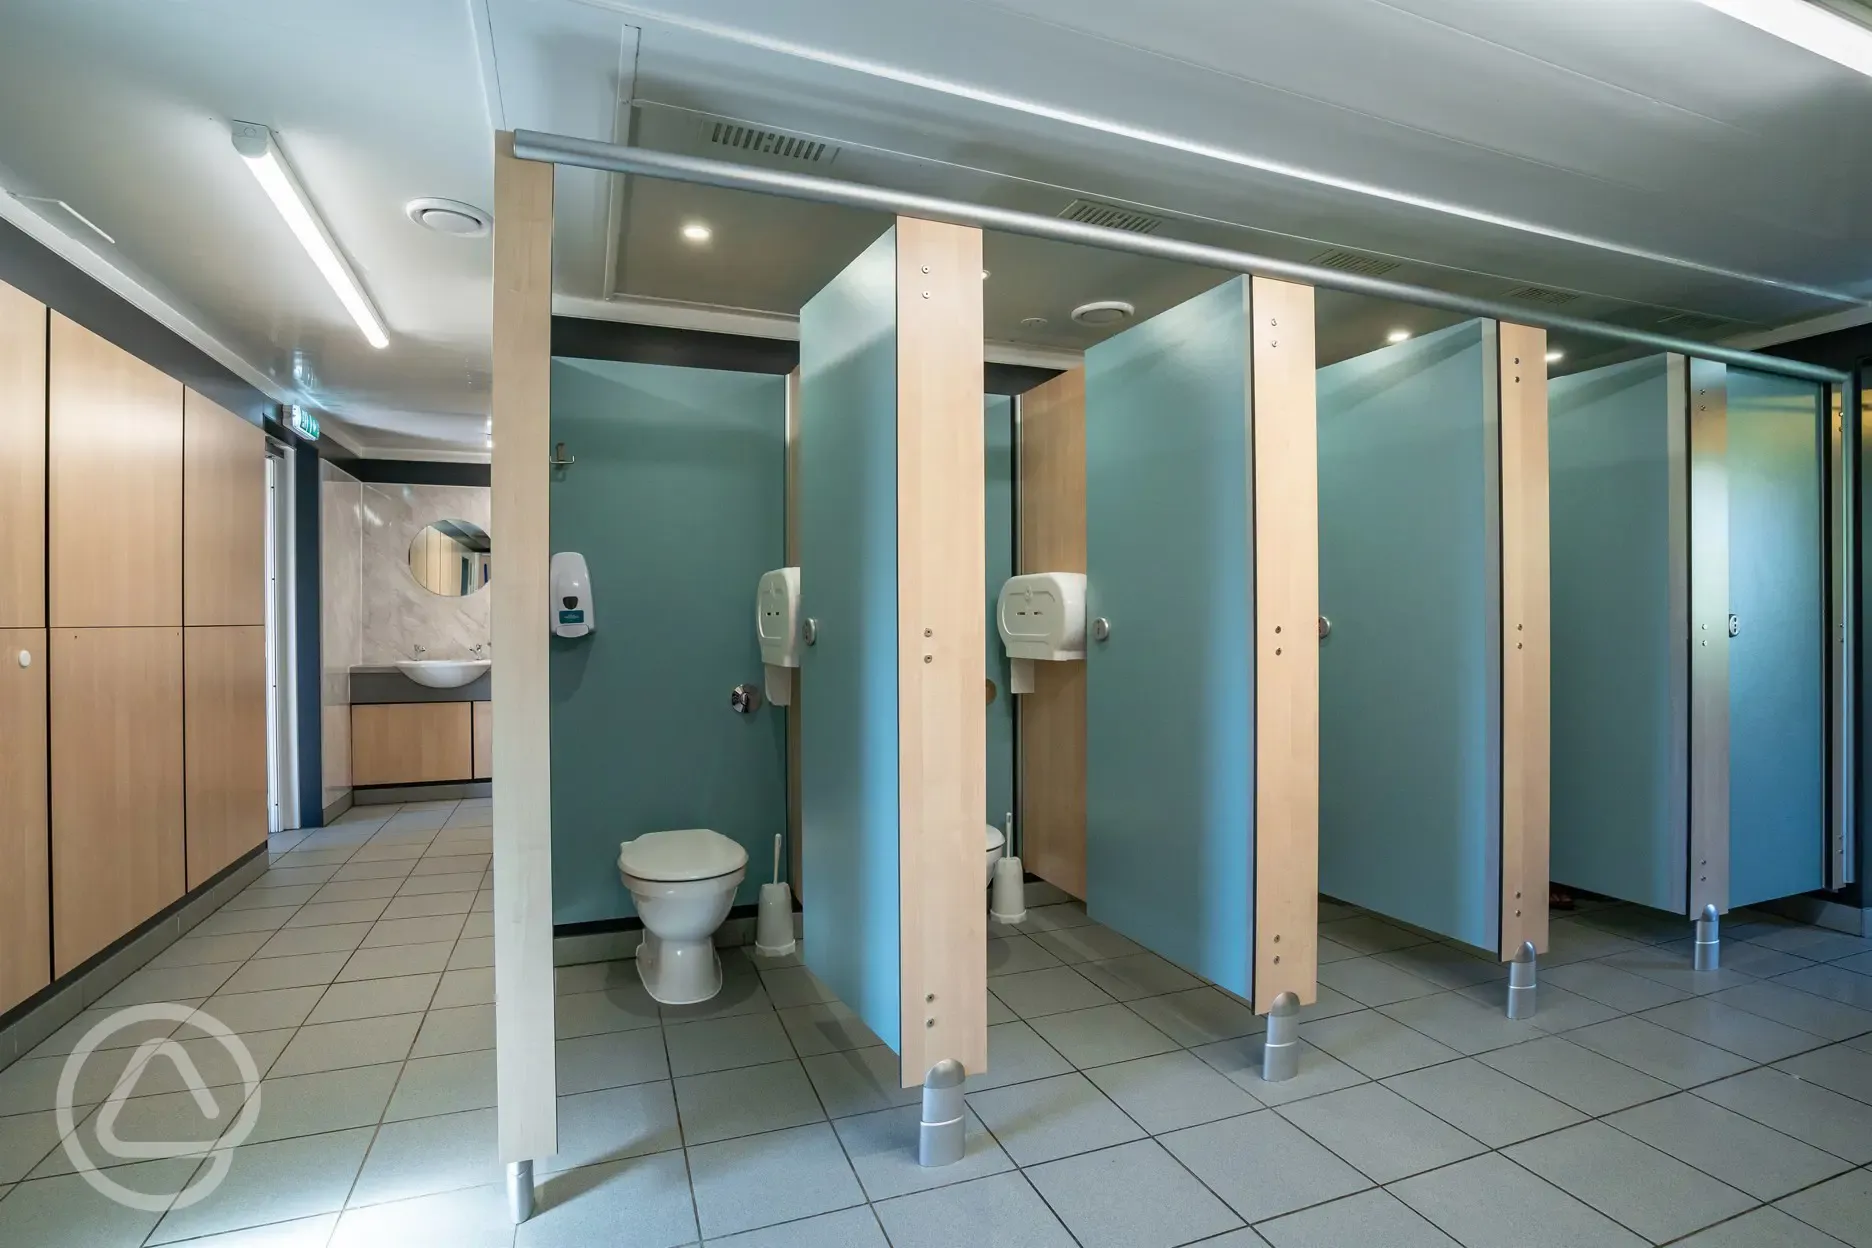 Men's toilets